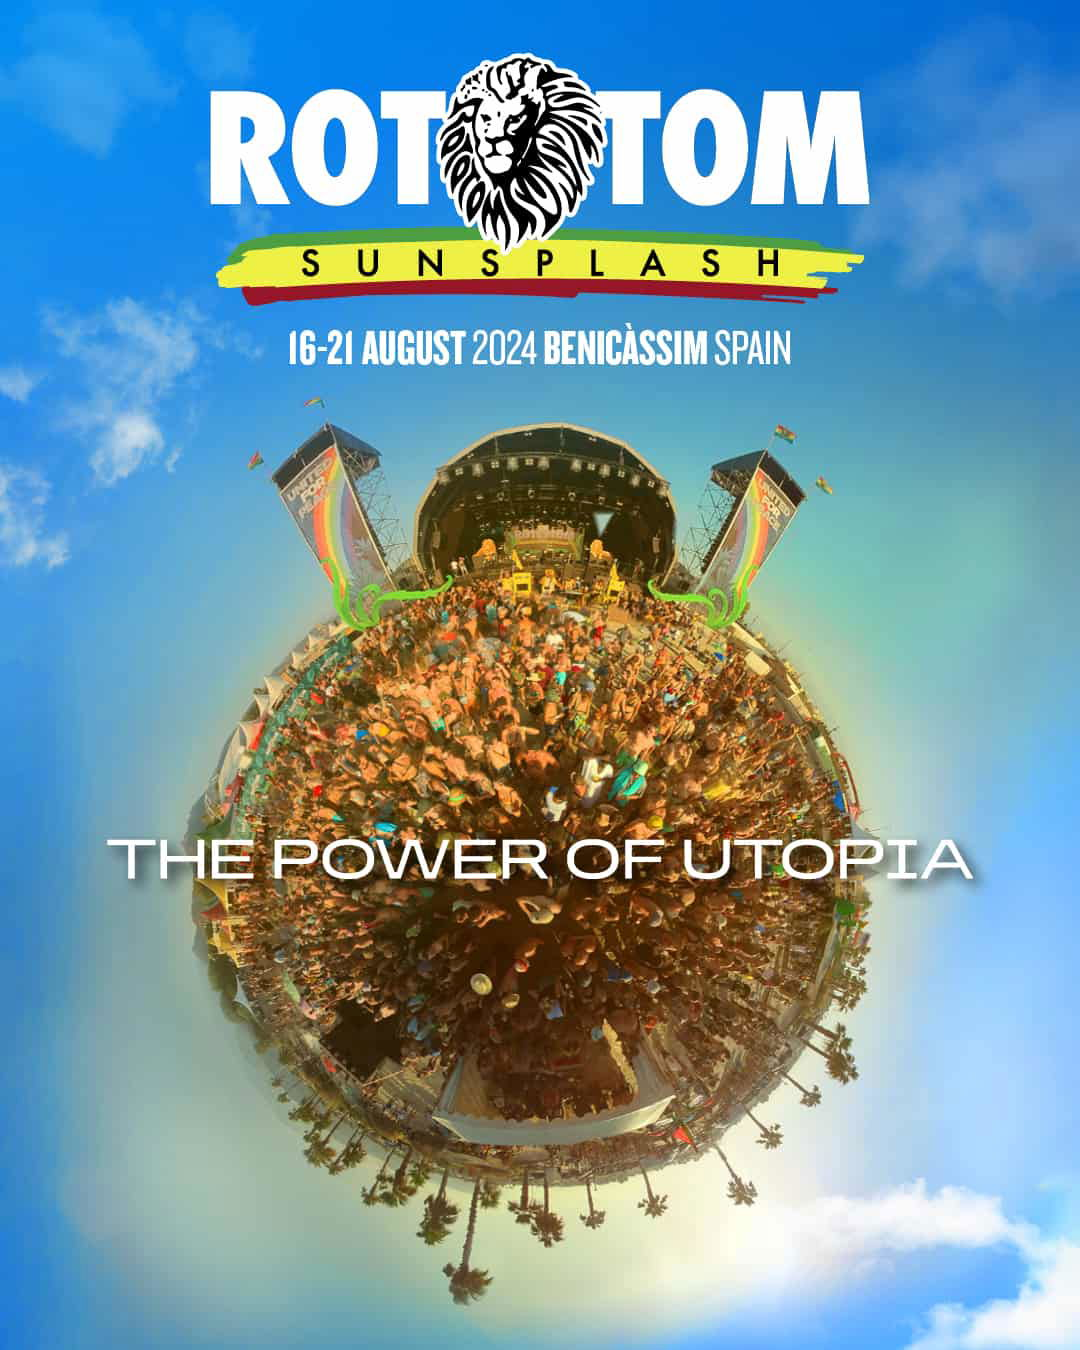 The Power of Utopia - Rototom Sunsplash 2024